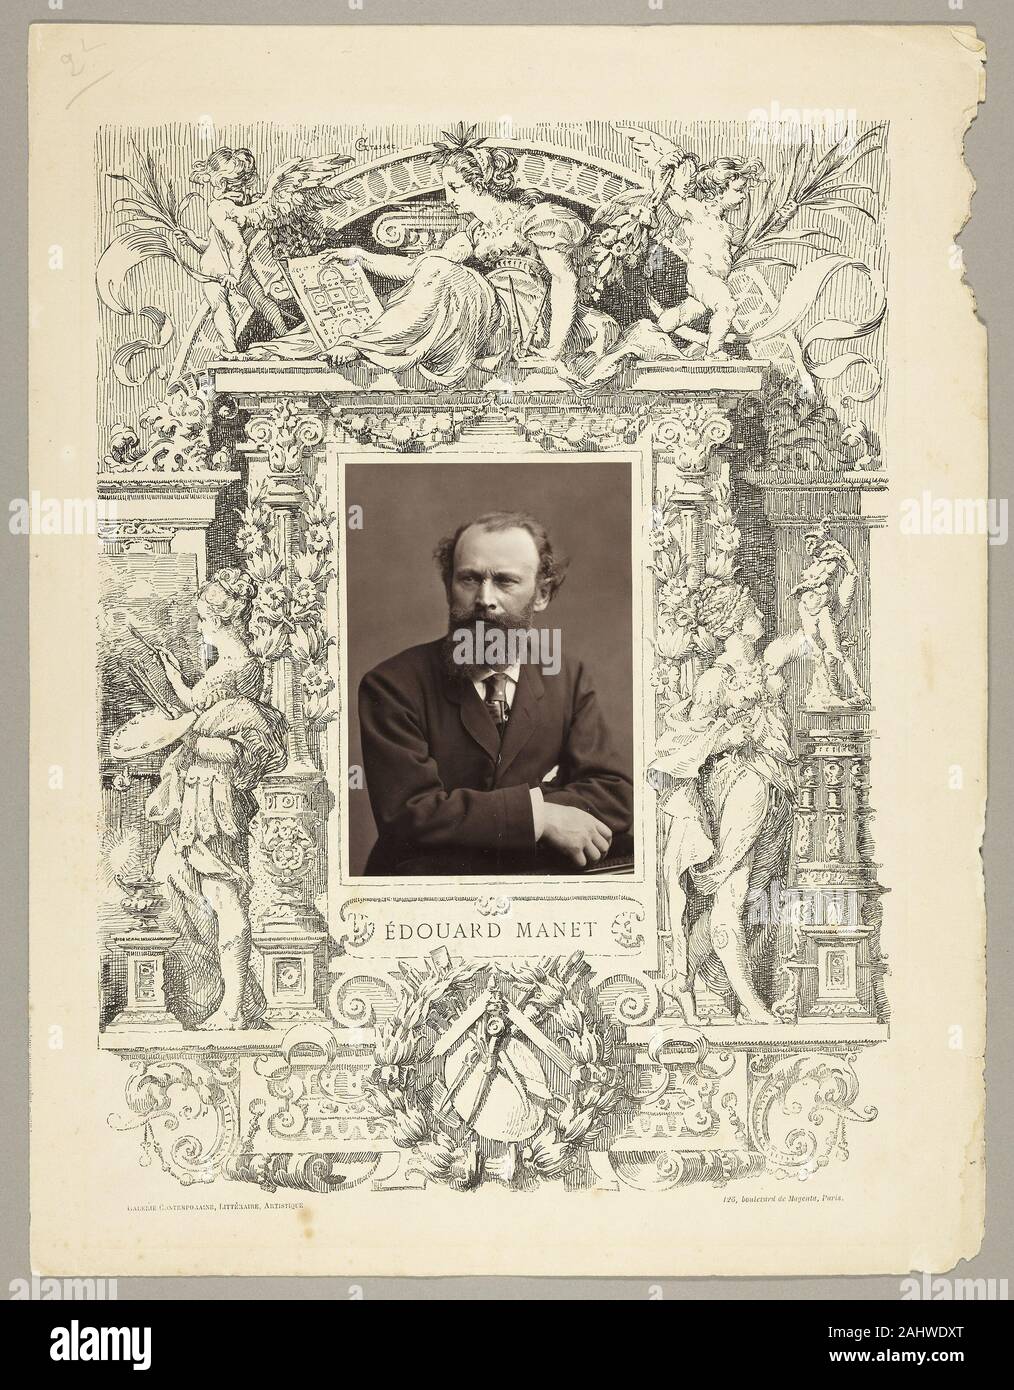 Nadar (Gaspard Félix Tournachon). Édouard Manet (pittore francese, 1832-1883). 1865. La Francia. Woodburytype, dal periodico "Galerie Contemporaine Littéraire, Artistique" (1876), volume 1 Foto Stock